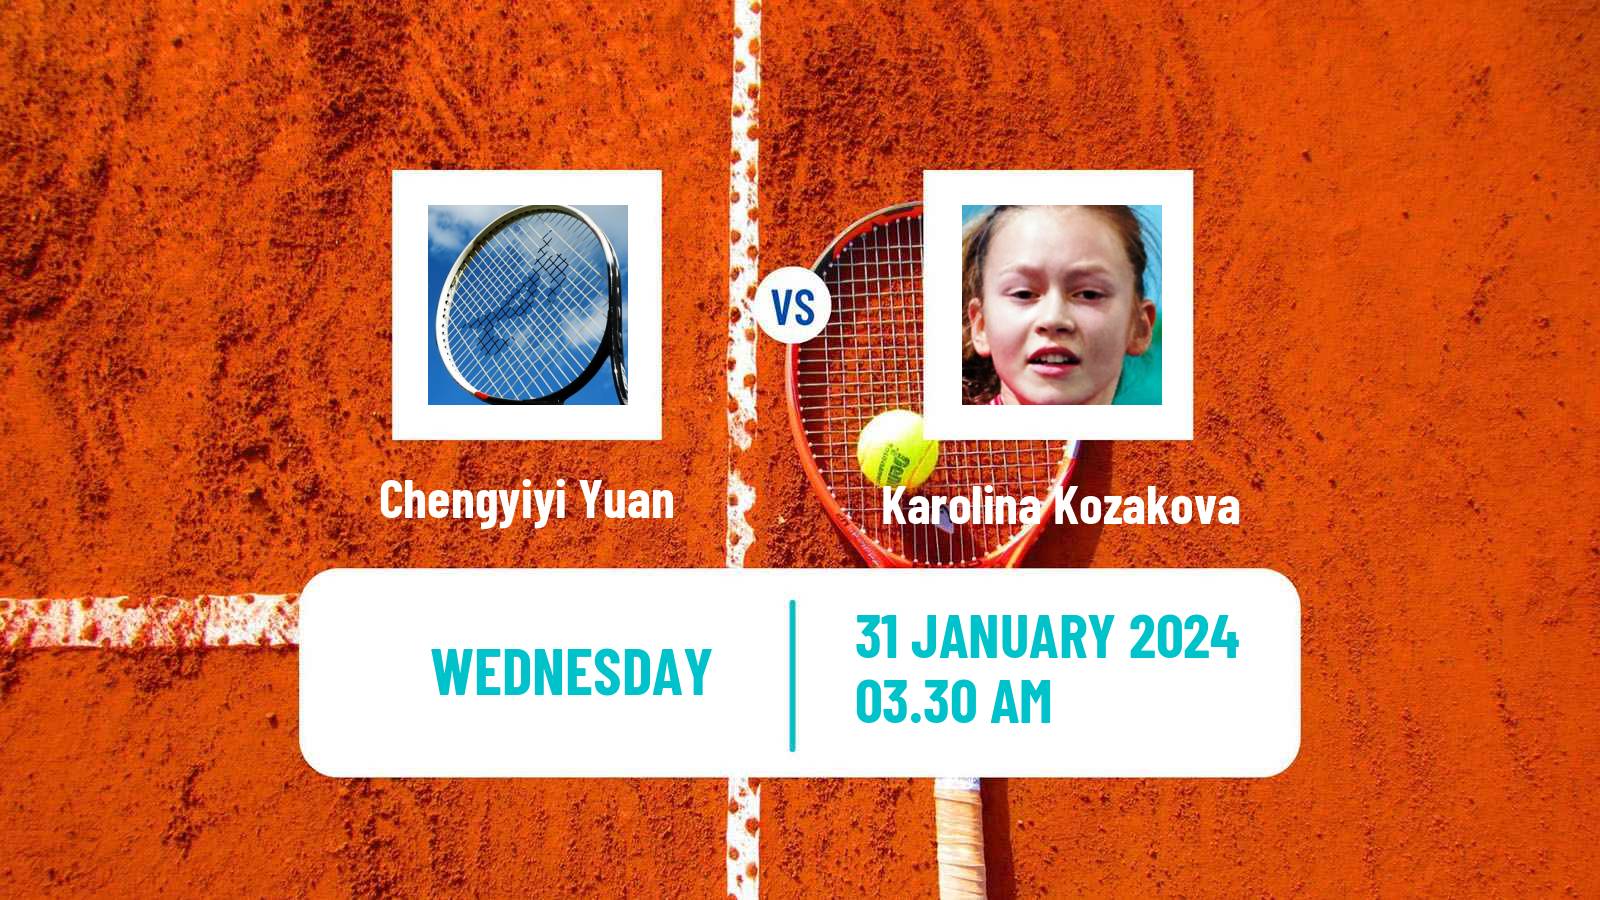 Tennis ITF W15 Monastir 3 Women Chengyiyi Yuan - Karolina Kozakova